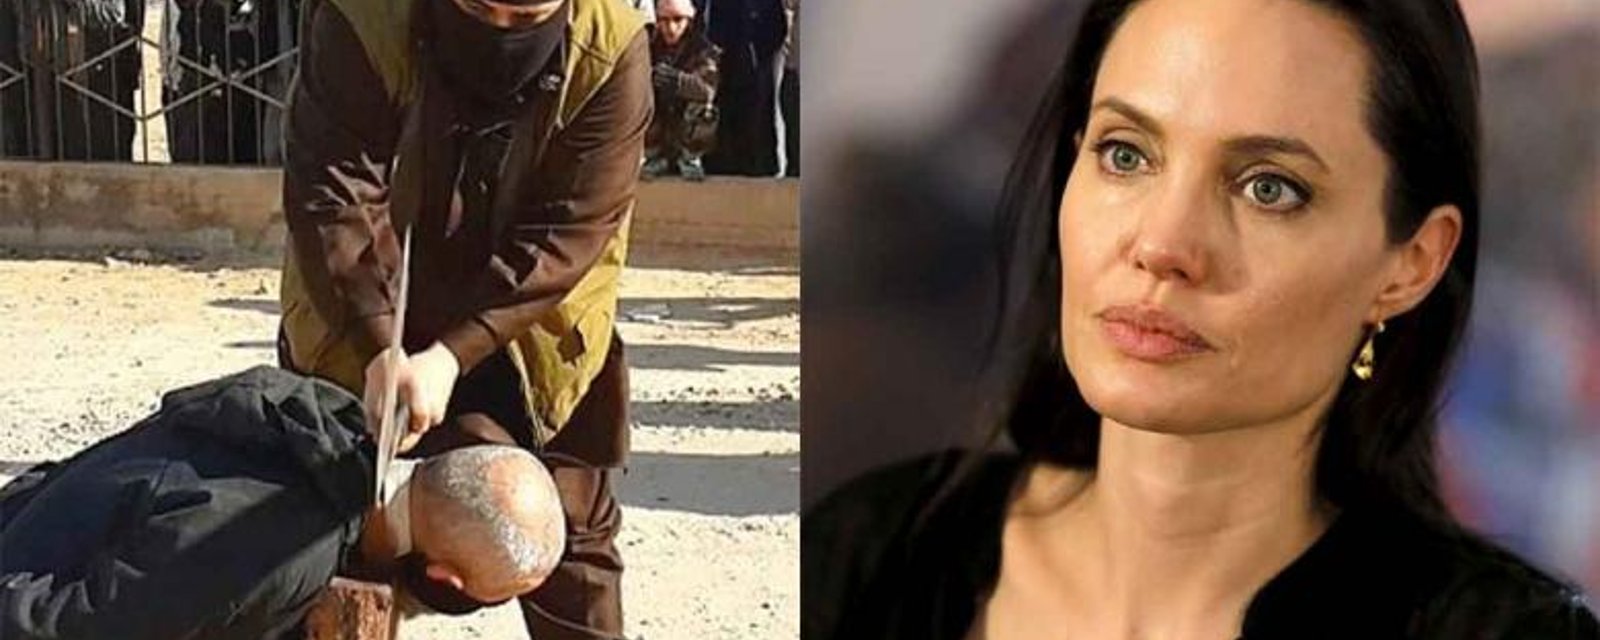 Angelina Jolie partage une histoire troublante à propos de l'État Islamique